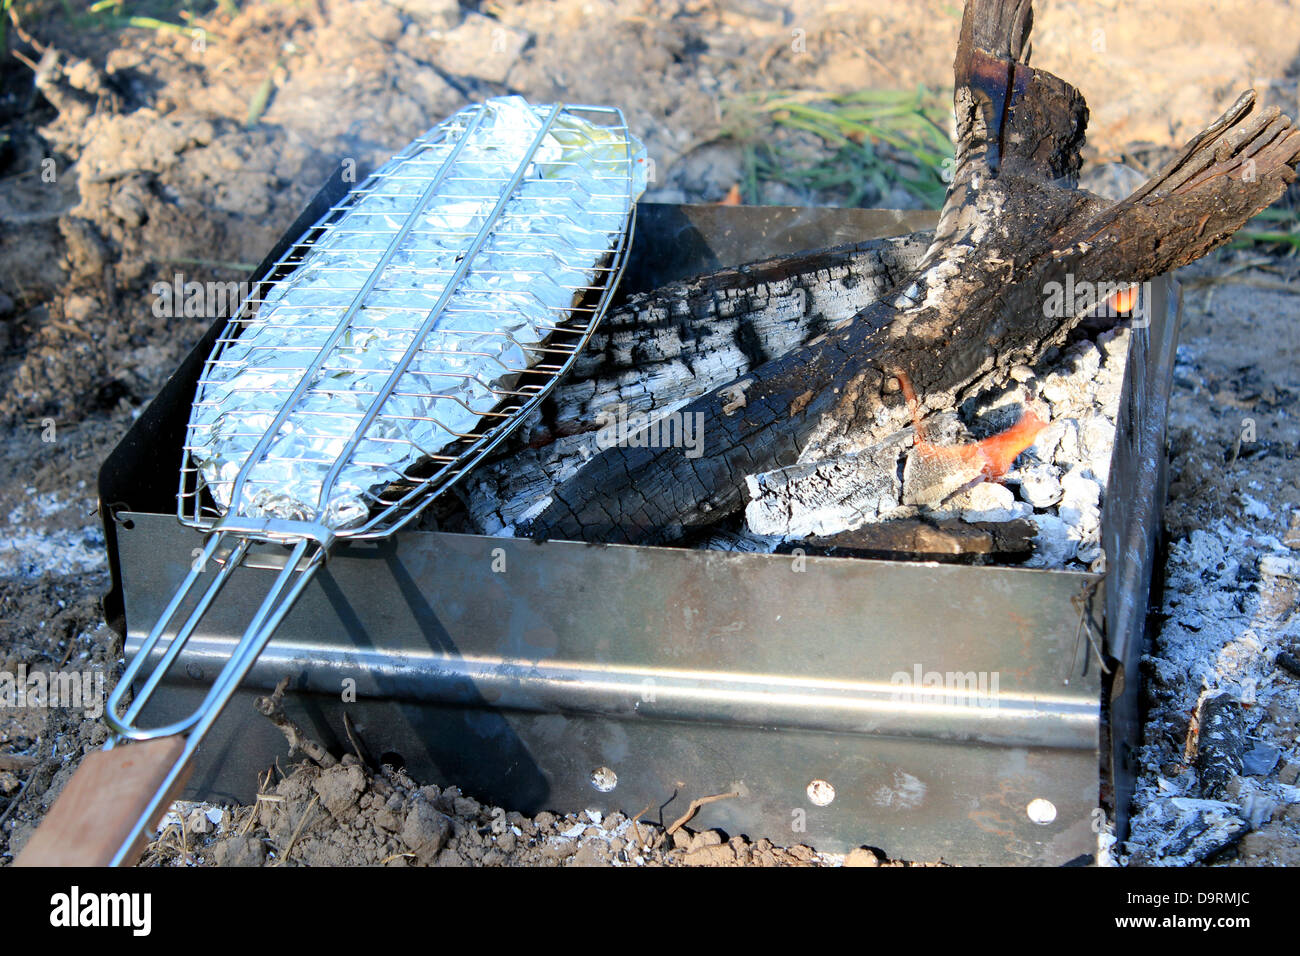 Bild von Gericht aus gebratenem Fisch gekocht in Brand Stockfoto